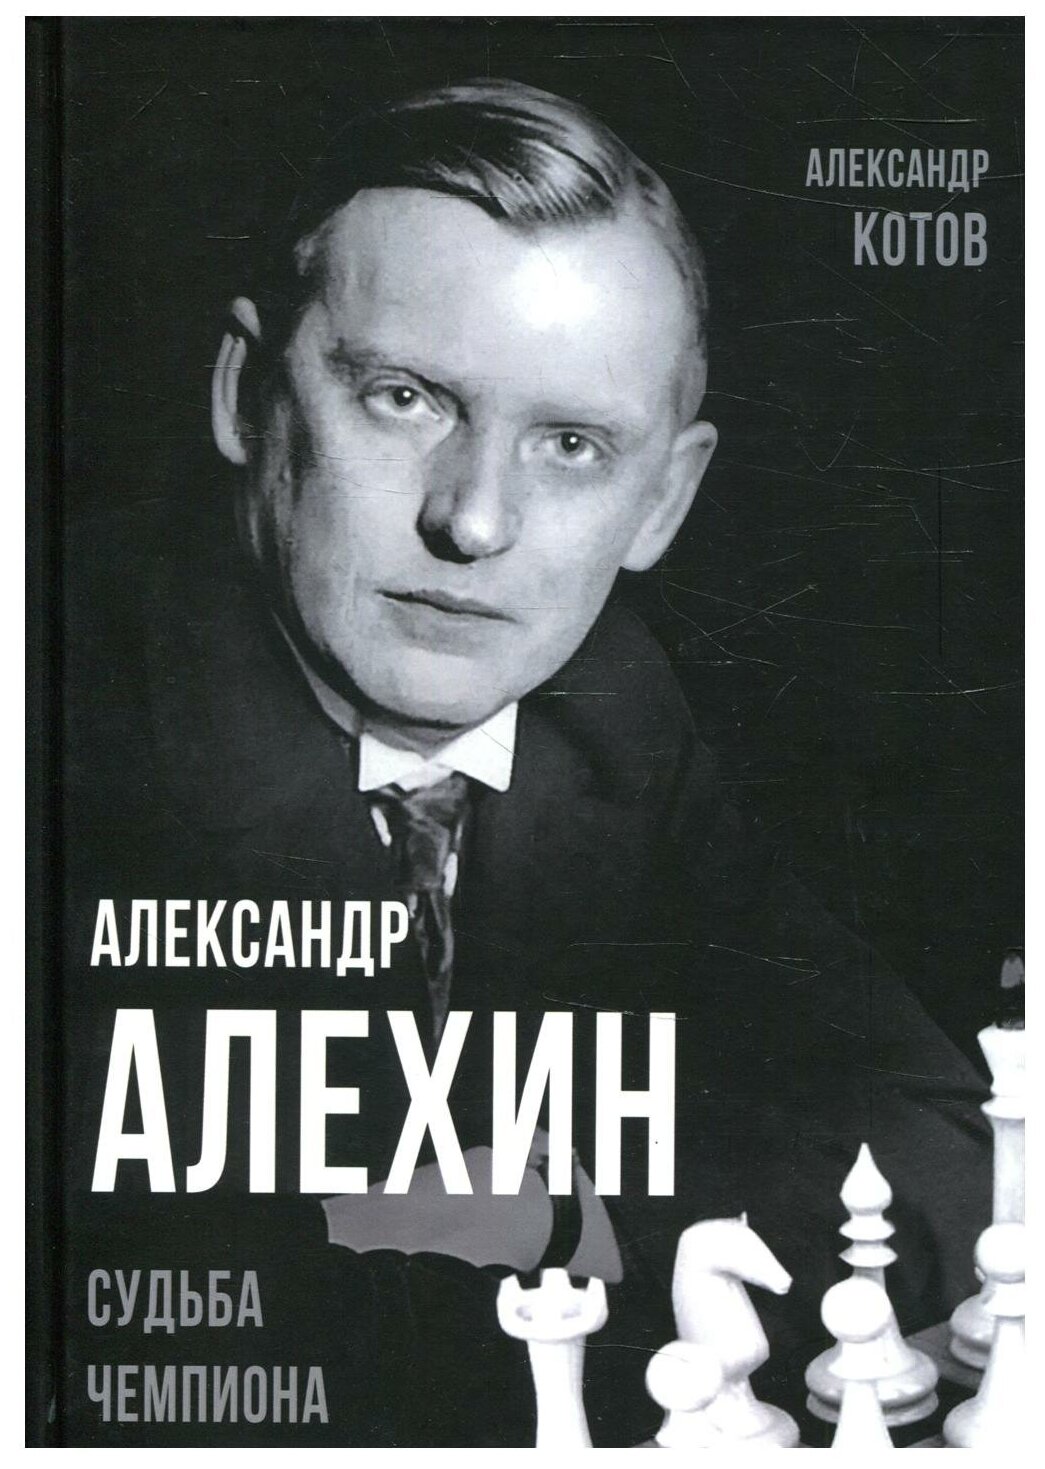 Александр Алехин. Судьба чемпиона - фото №1